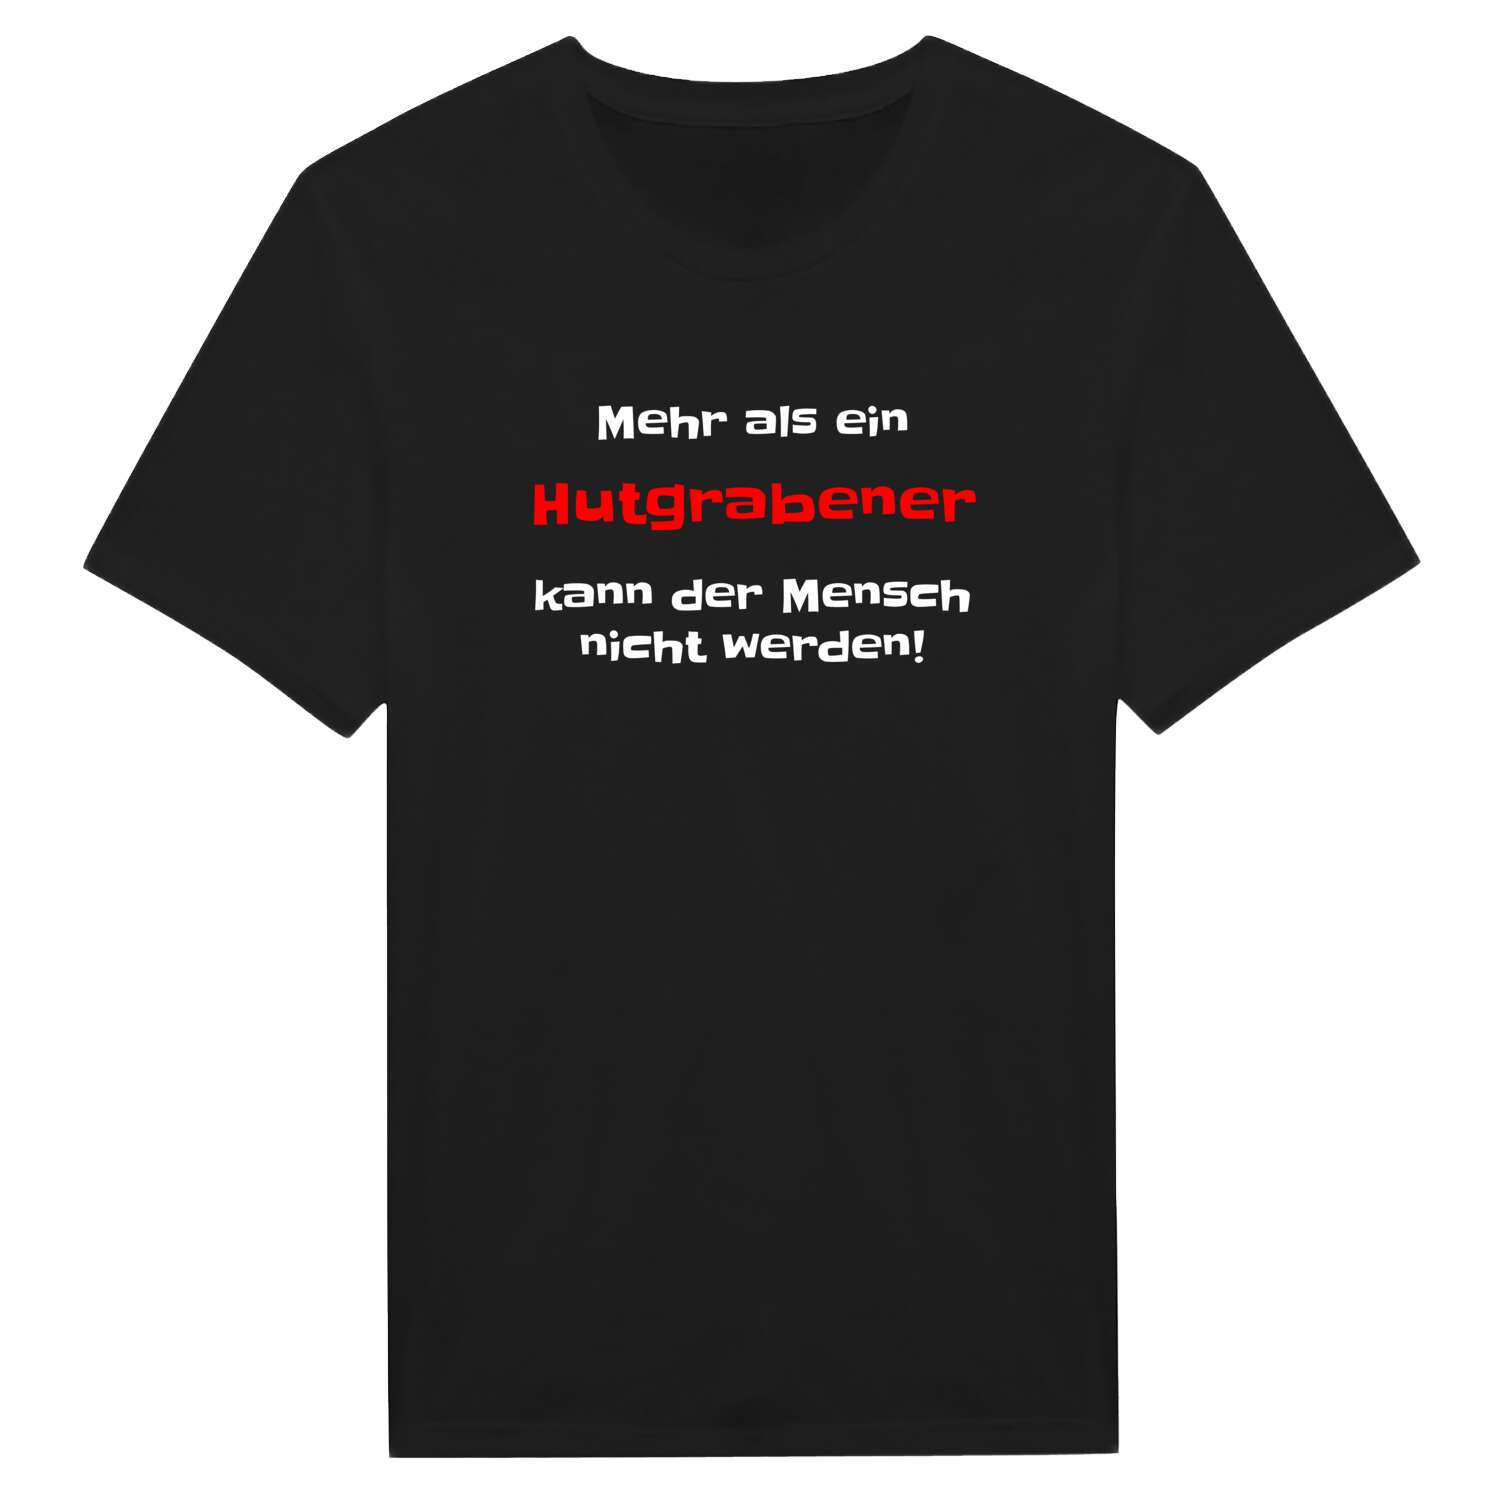 Hutgraben T-Shirt »Mehr als ein«